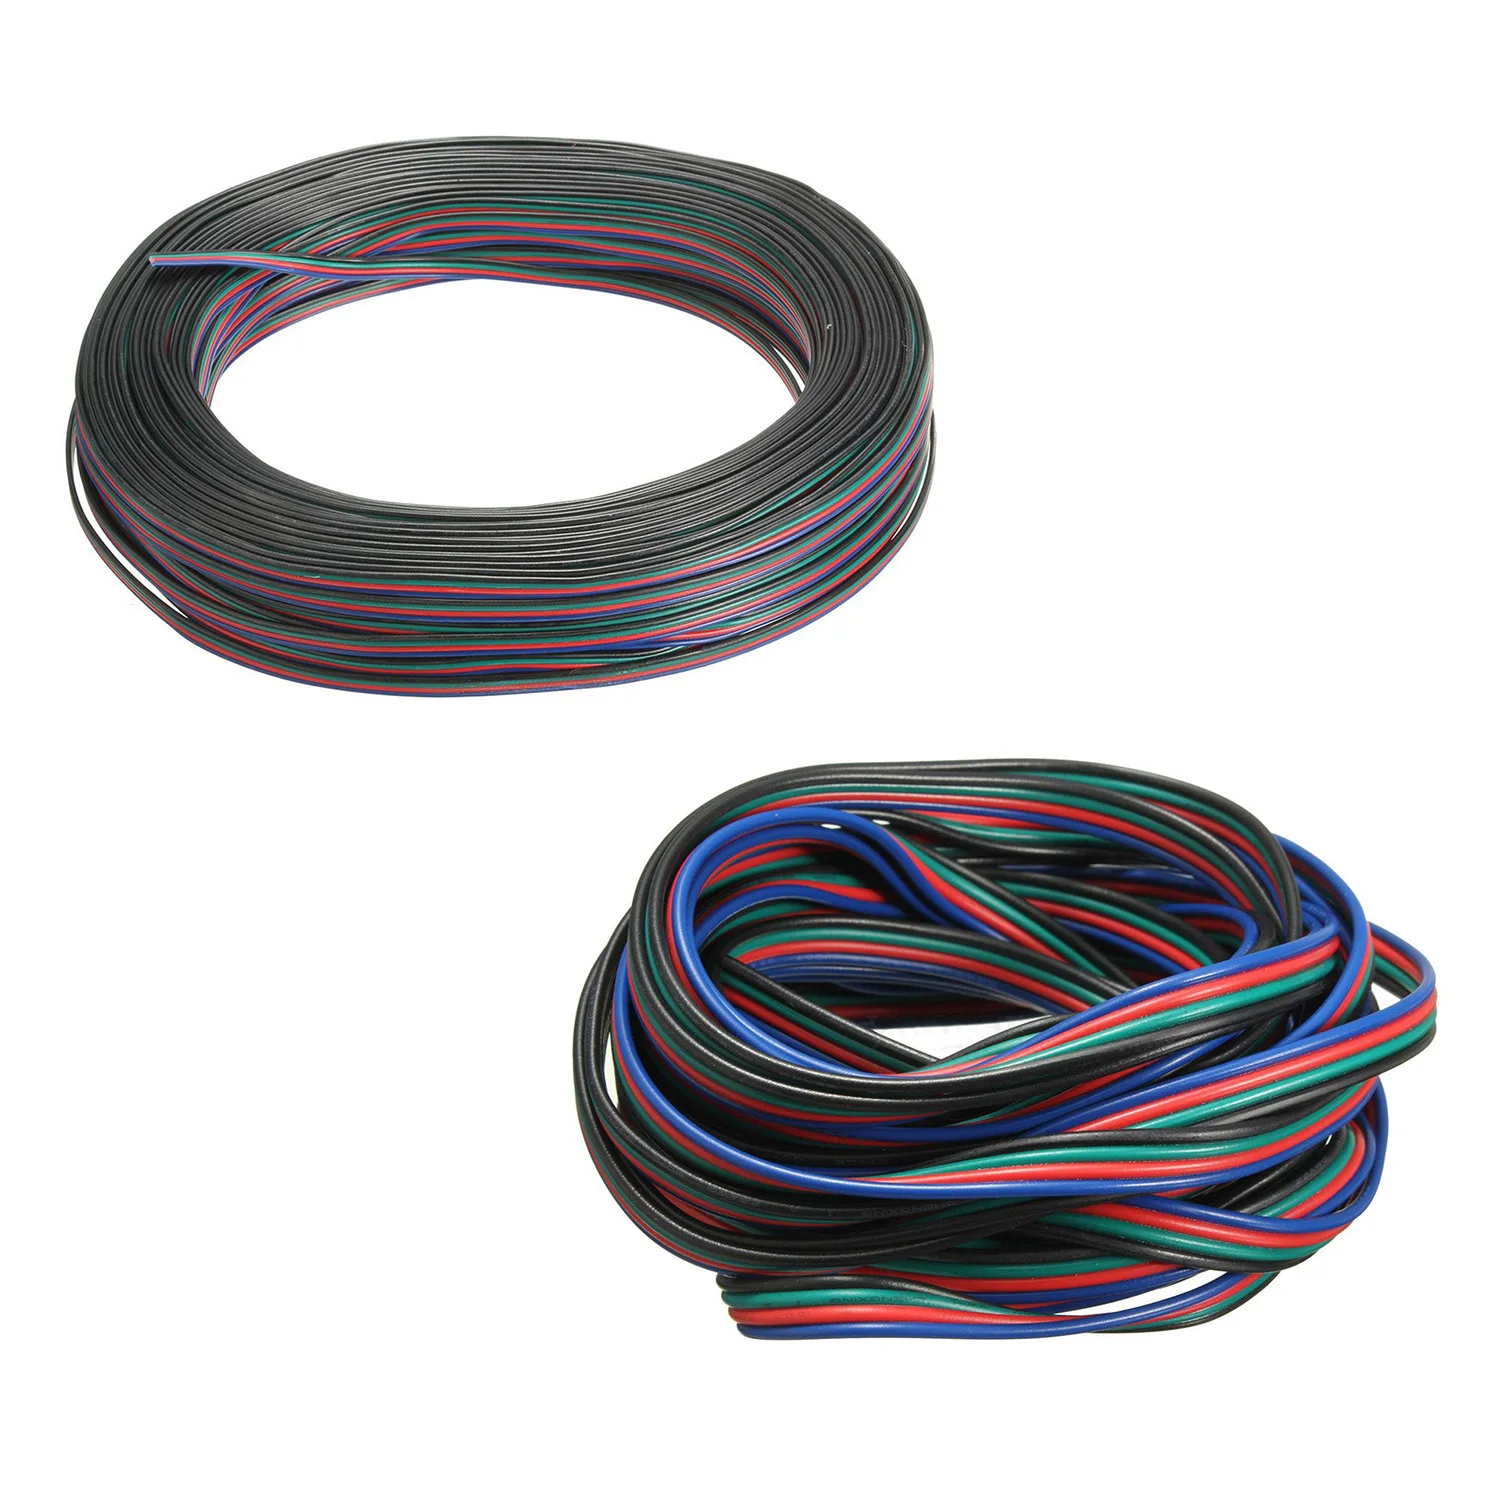 

4 контактный провод удлинитель Соединительный кабель Шнур для светодиодной ленты RGB 3528 5050 разъем Красочные 5 м/10 м/20 м/50 м